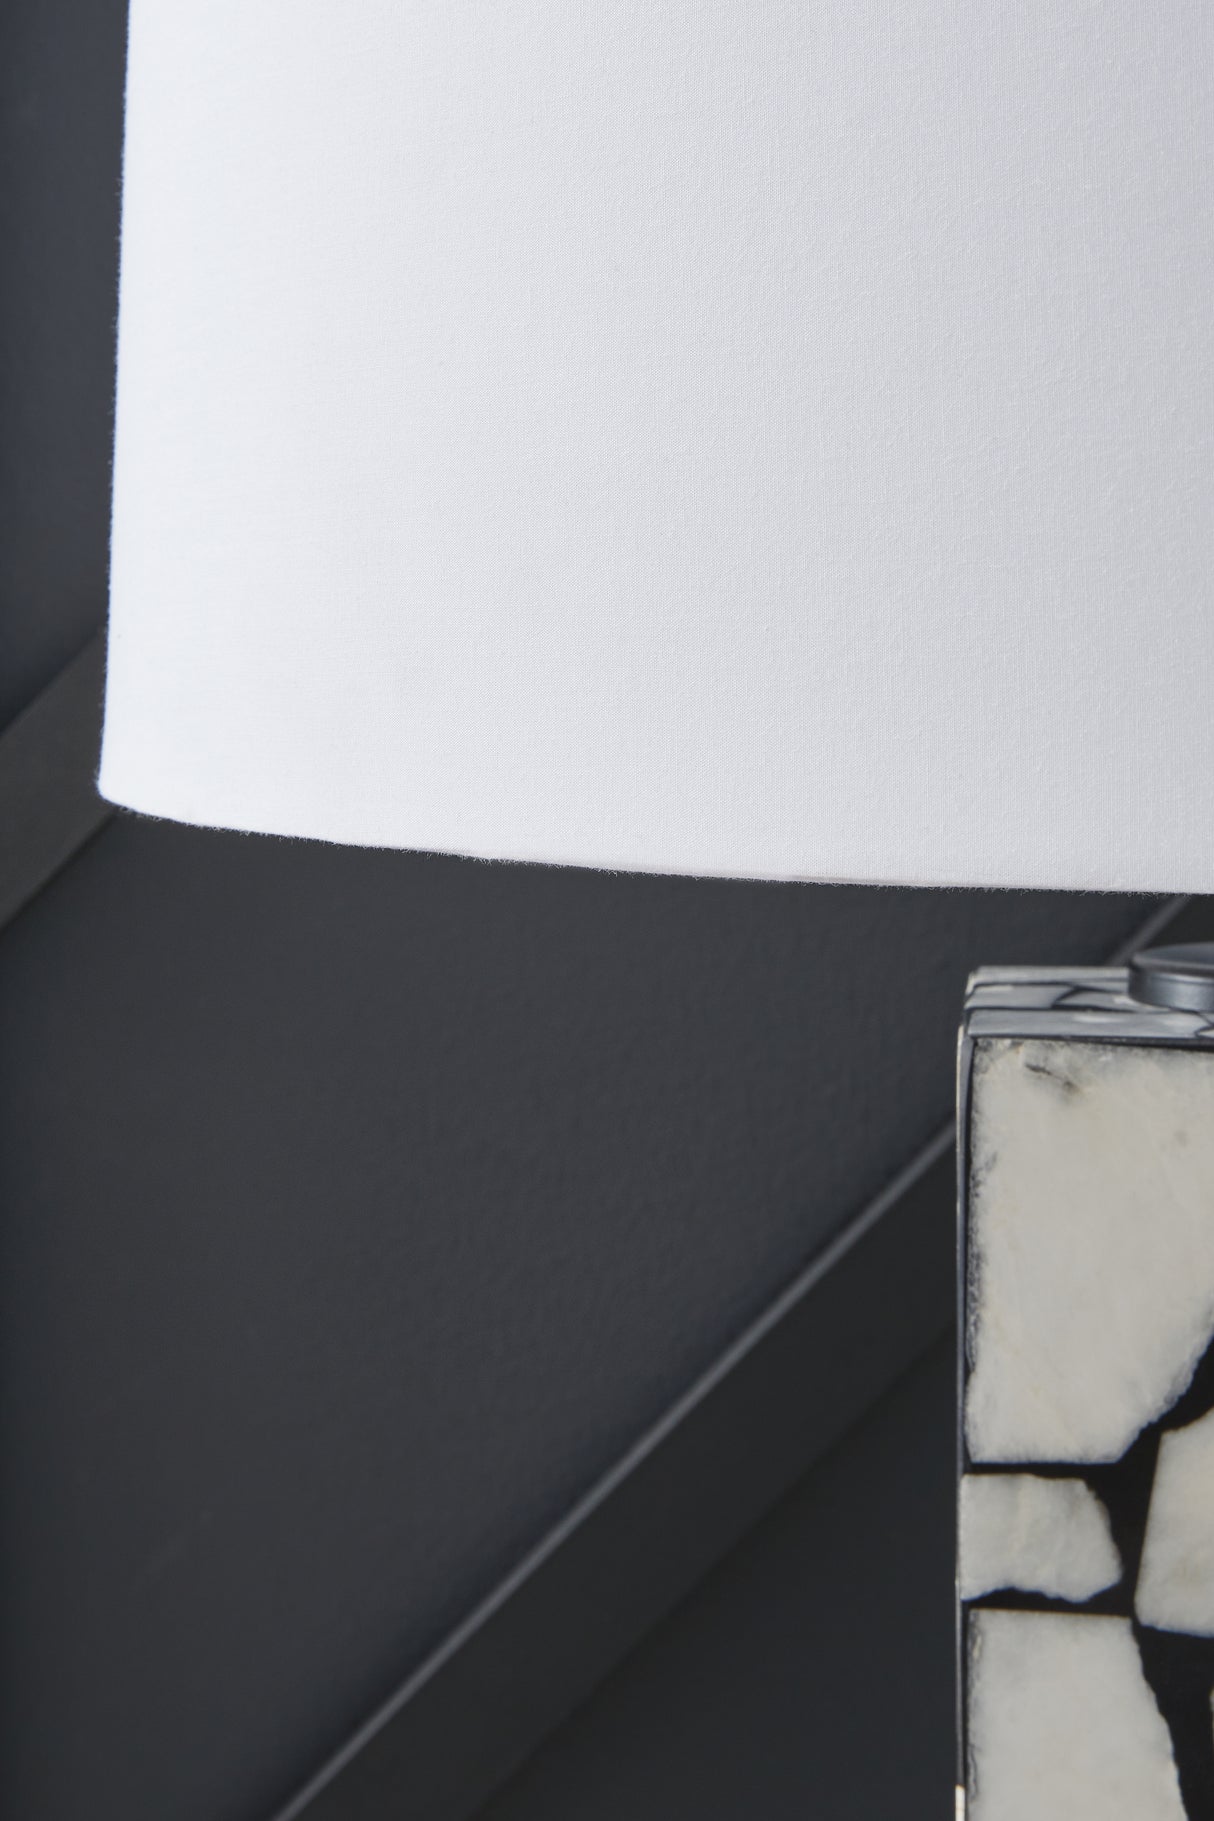 Macaria White/Black Table Lamp - L429044 - Luna Furniture